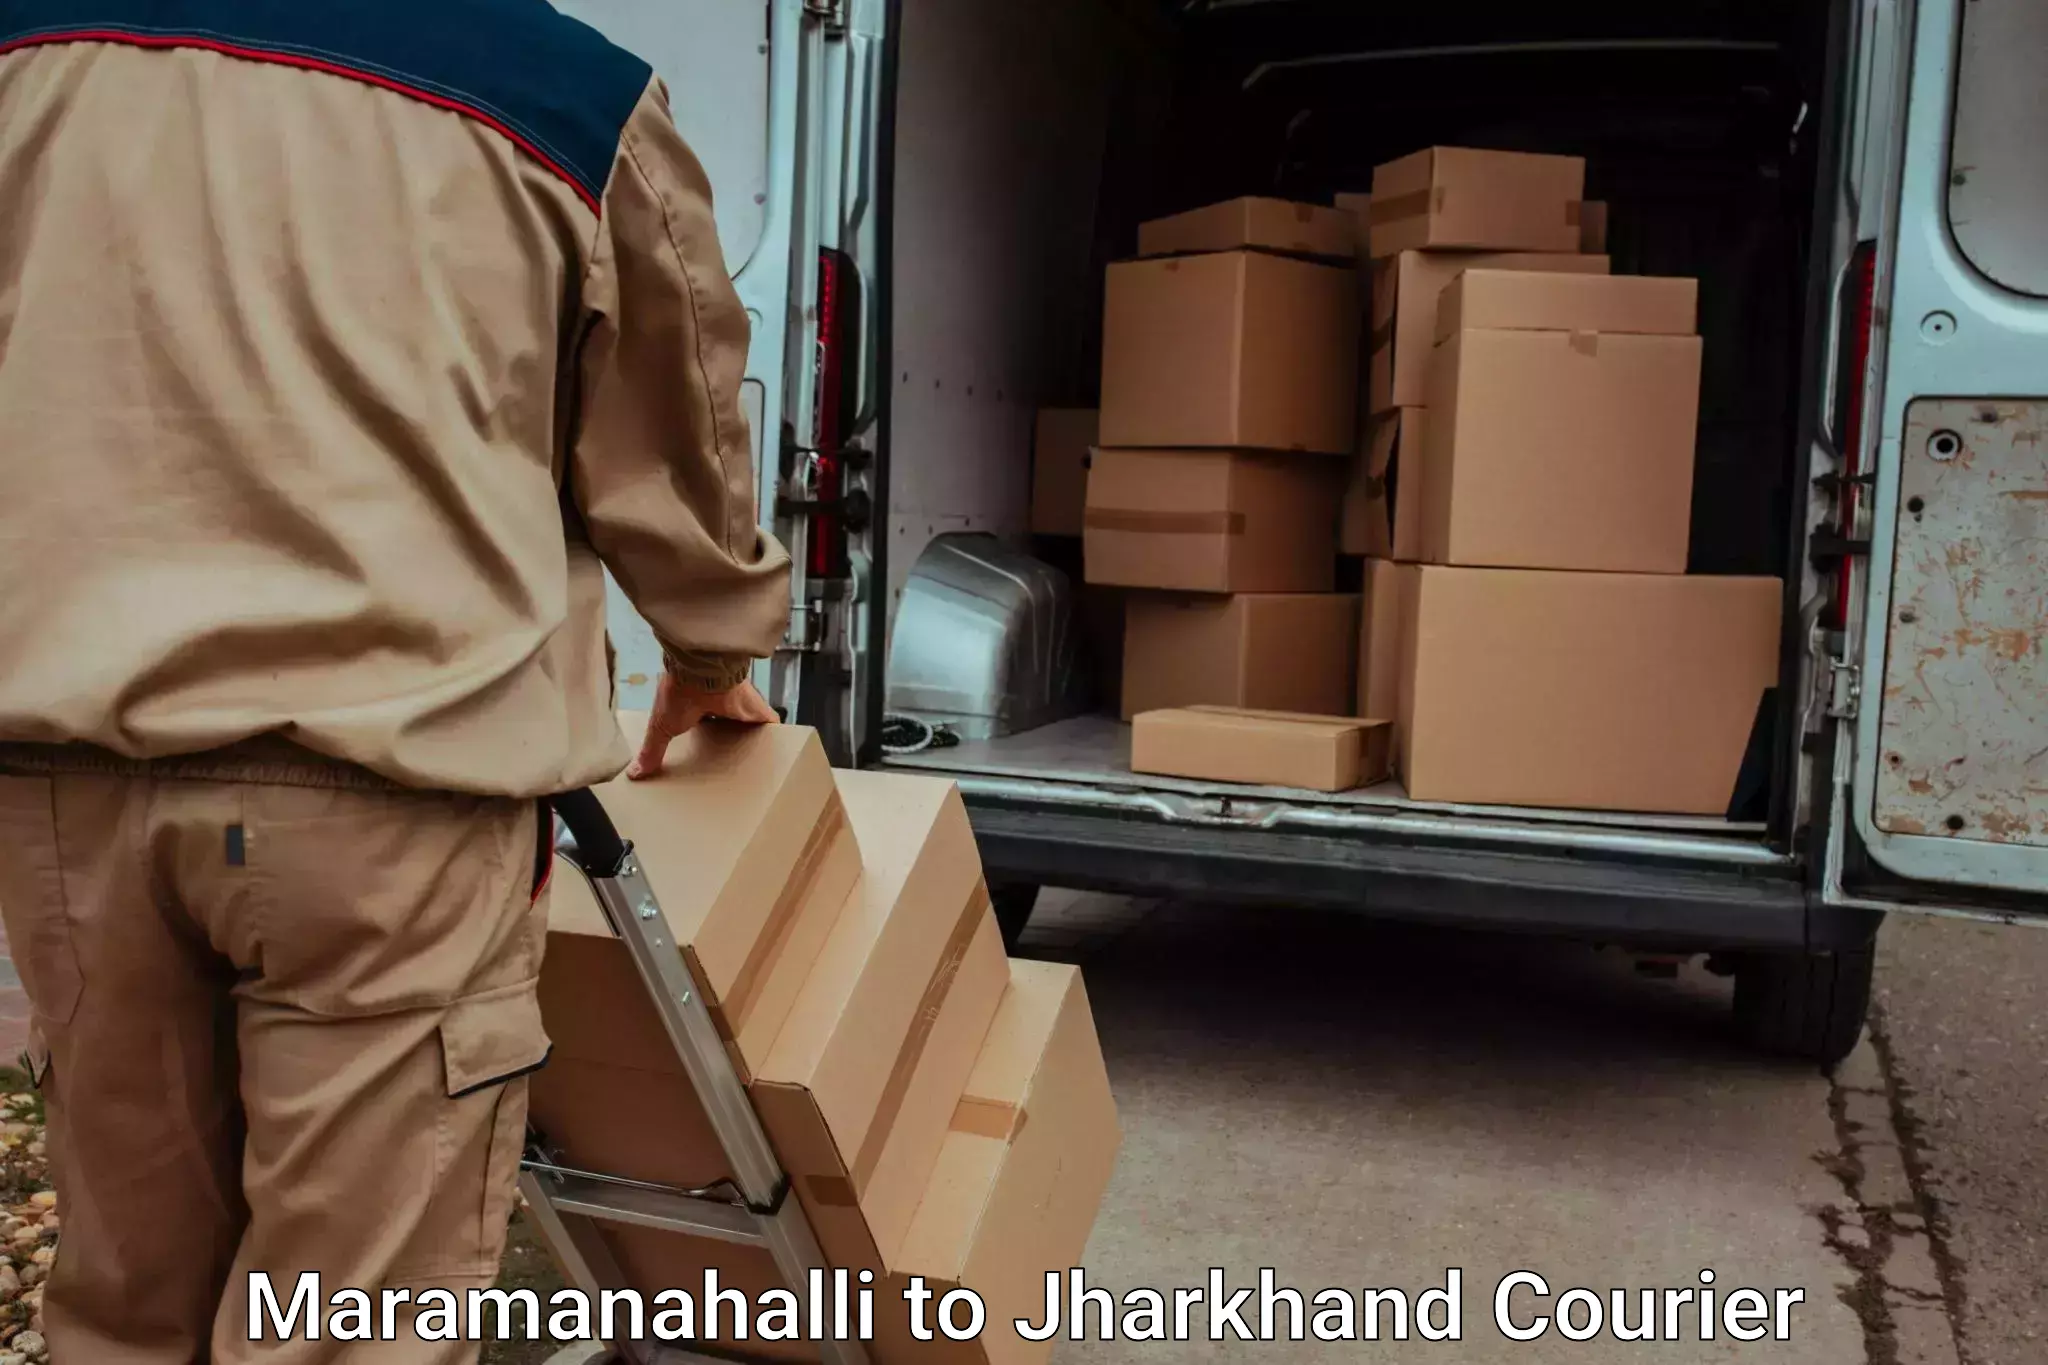 Door-to-door baggage service Maramanahalli to Sahibganj